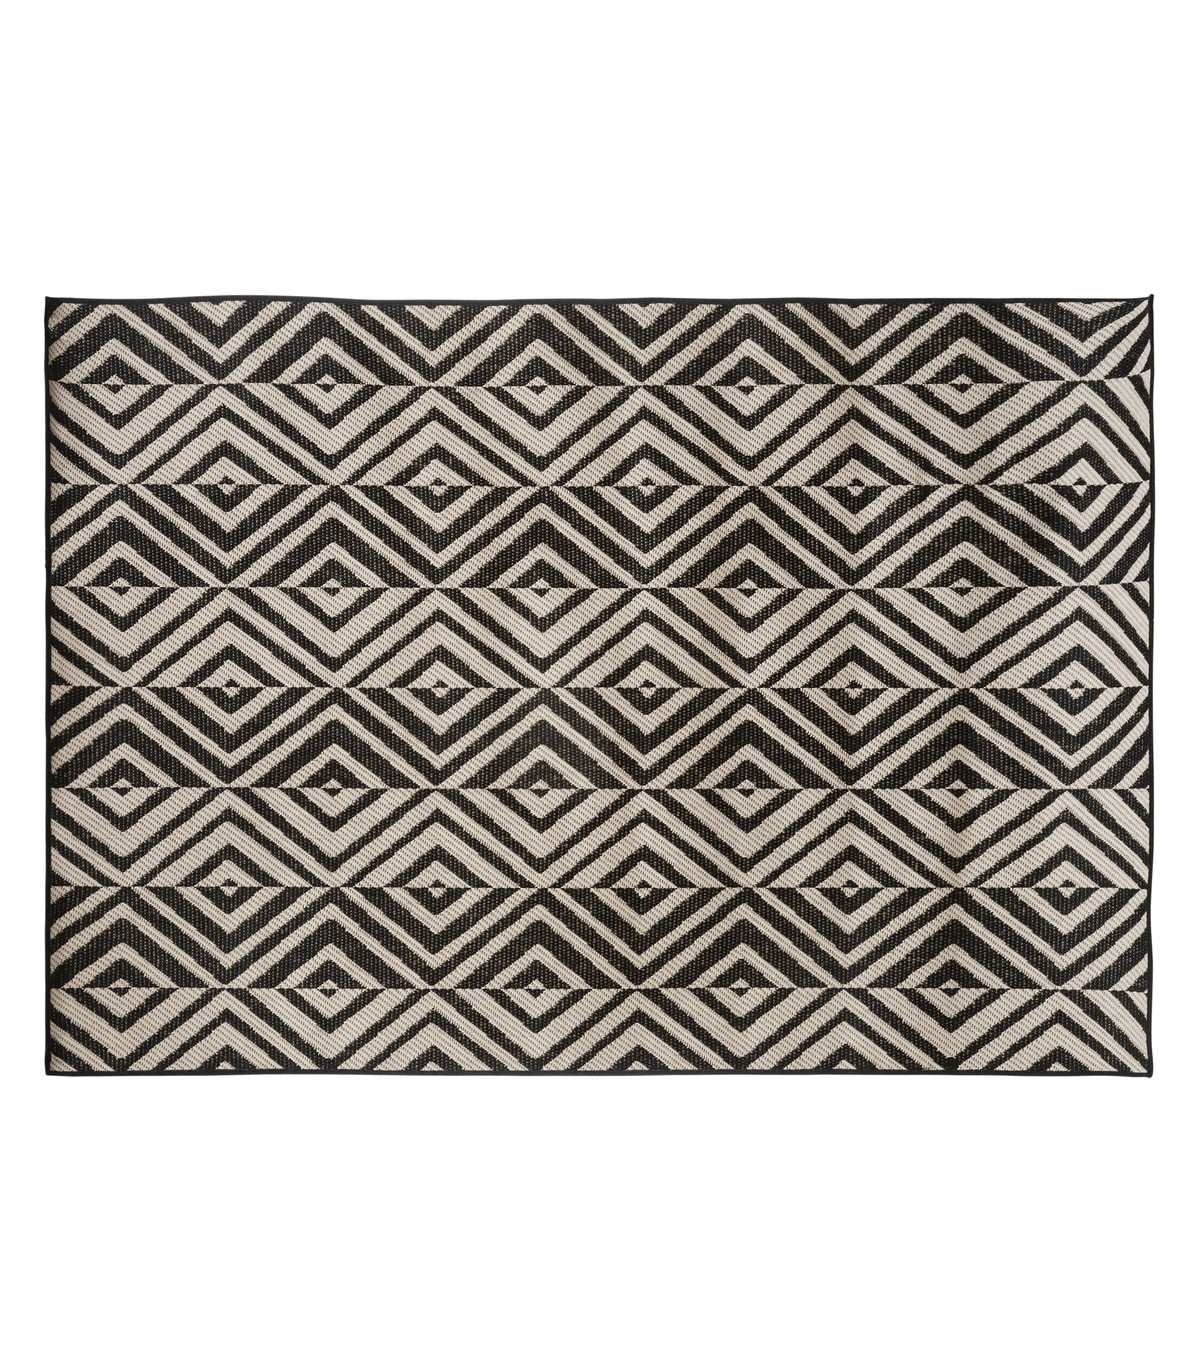 Tapis décoratif noir pour extérieur ou intérieur en polypropylène 150 x 230 cm